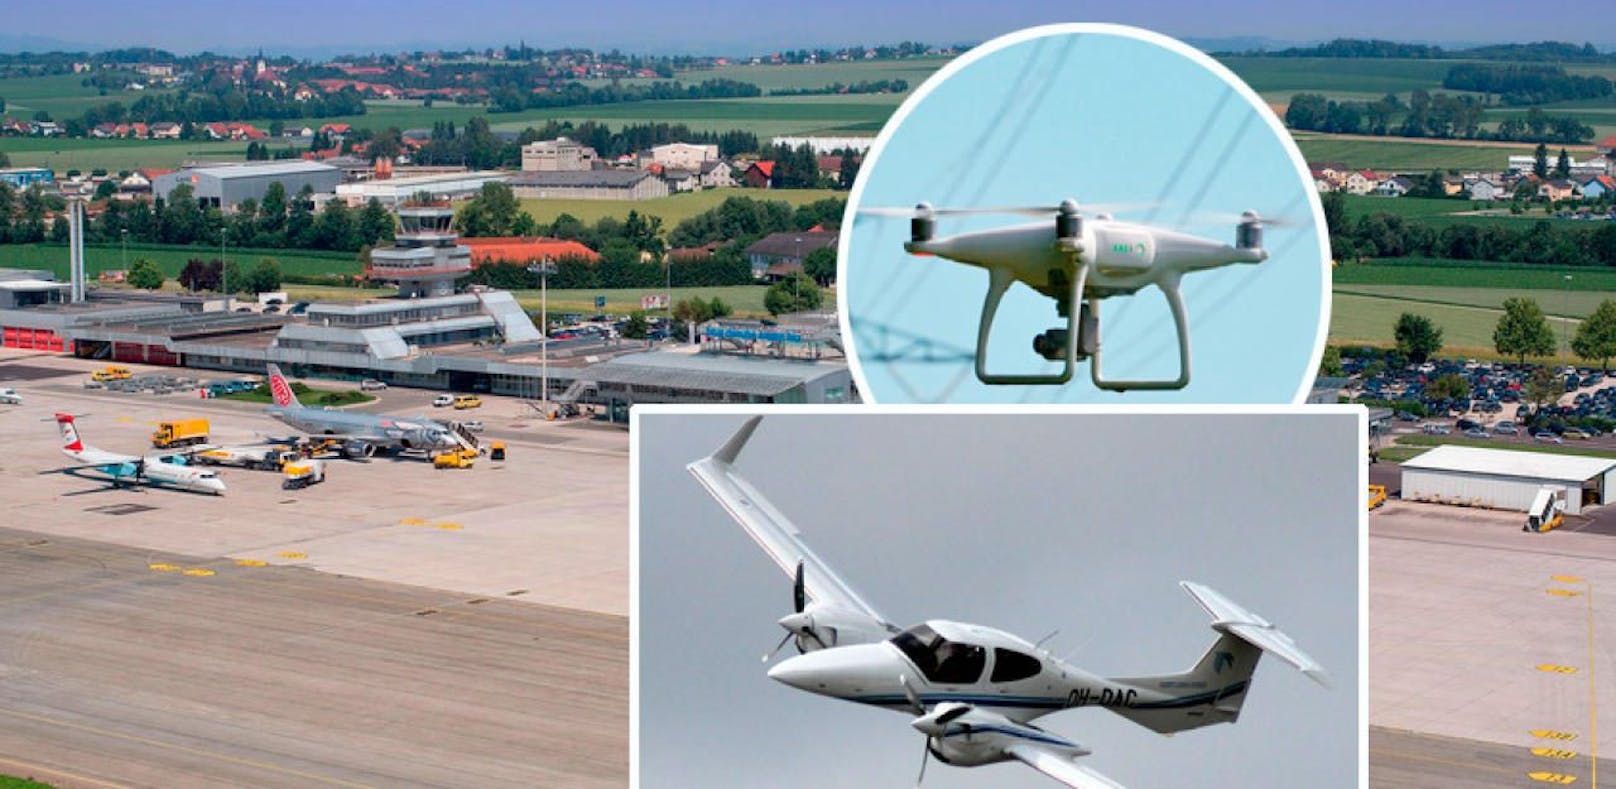 Am Flughafen Linz kollidierte ein Kleinflugzeug des Typs DA-42 fast mit einer Drohne.